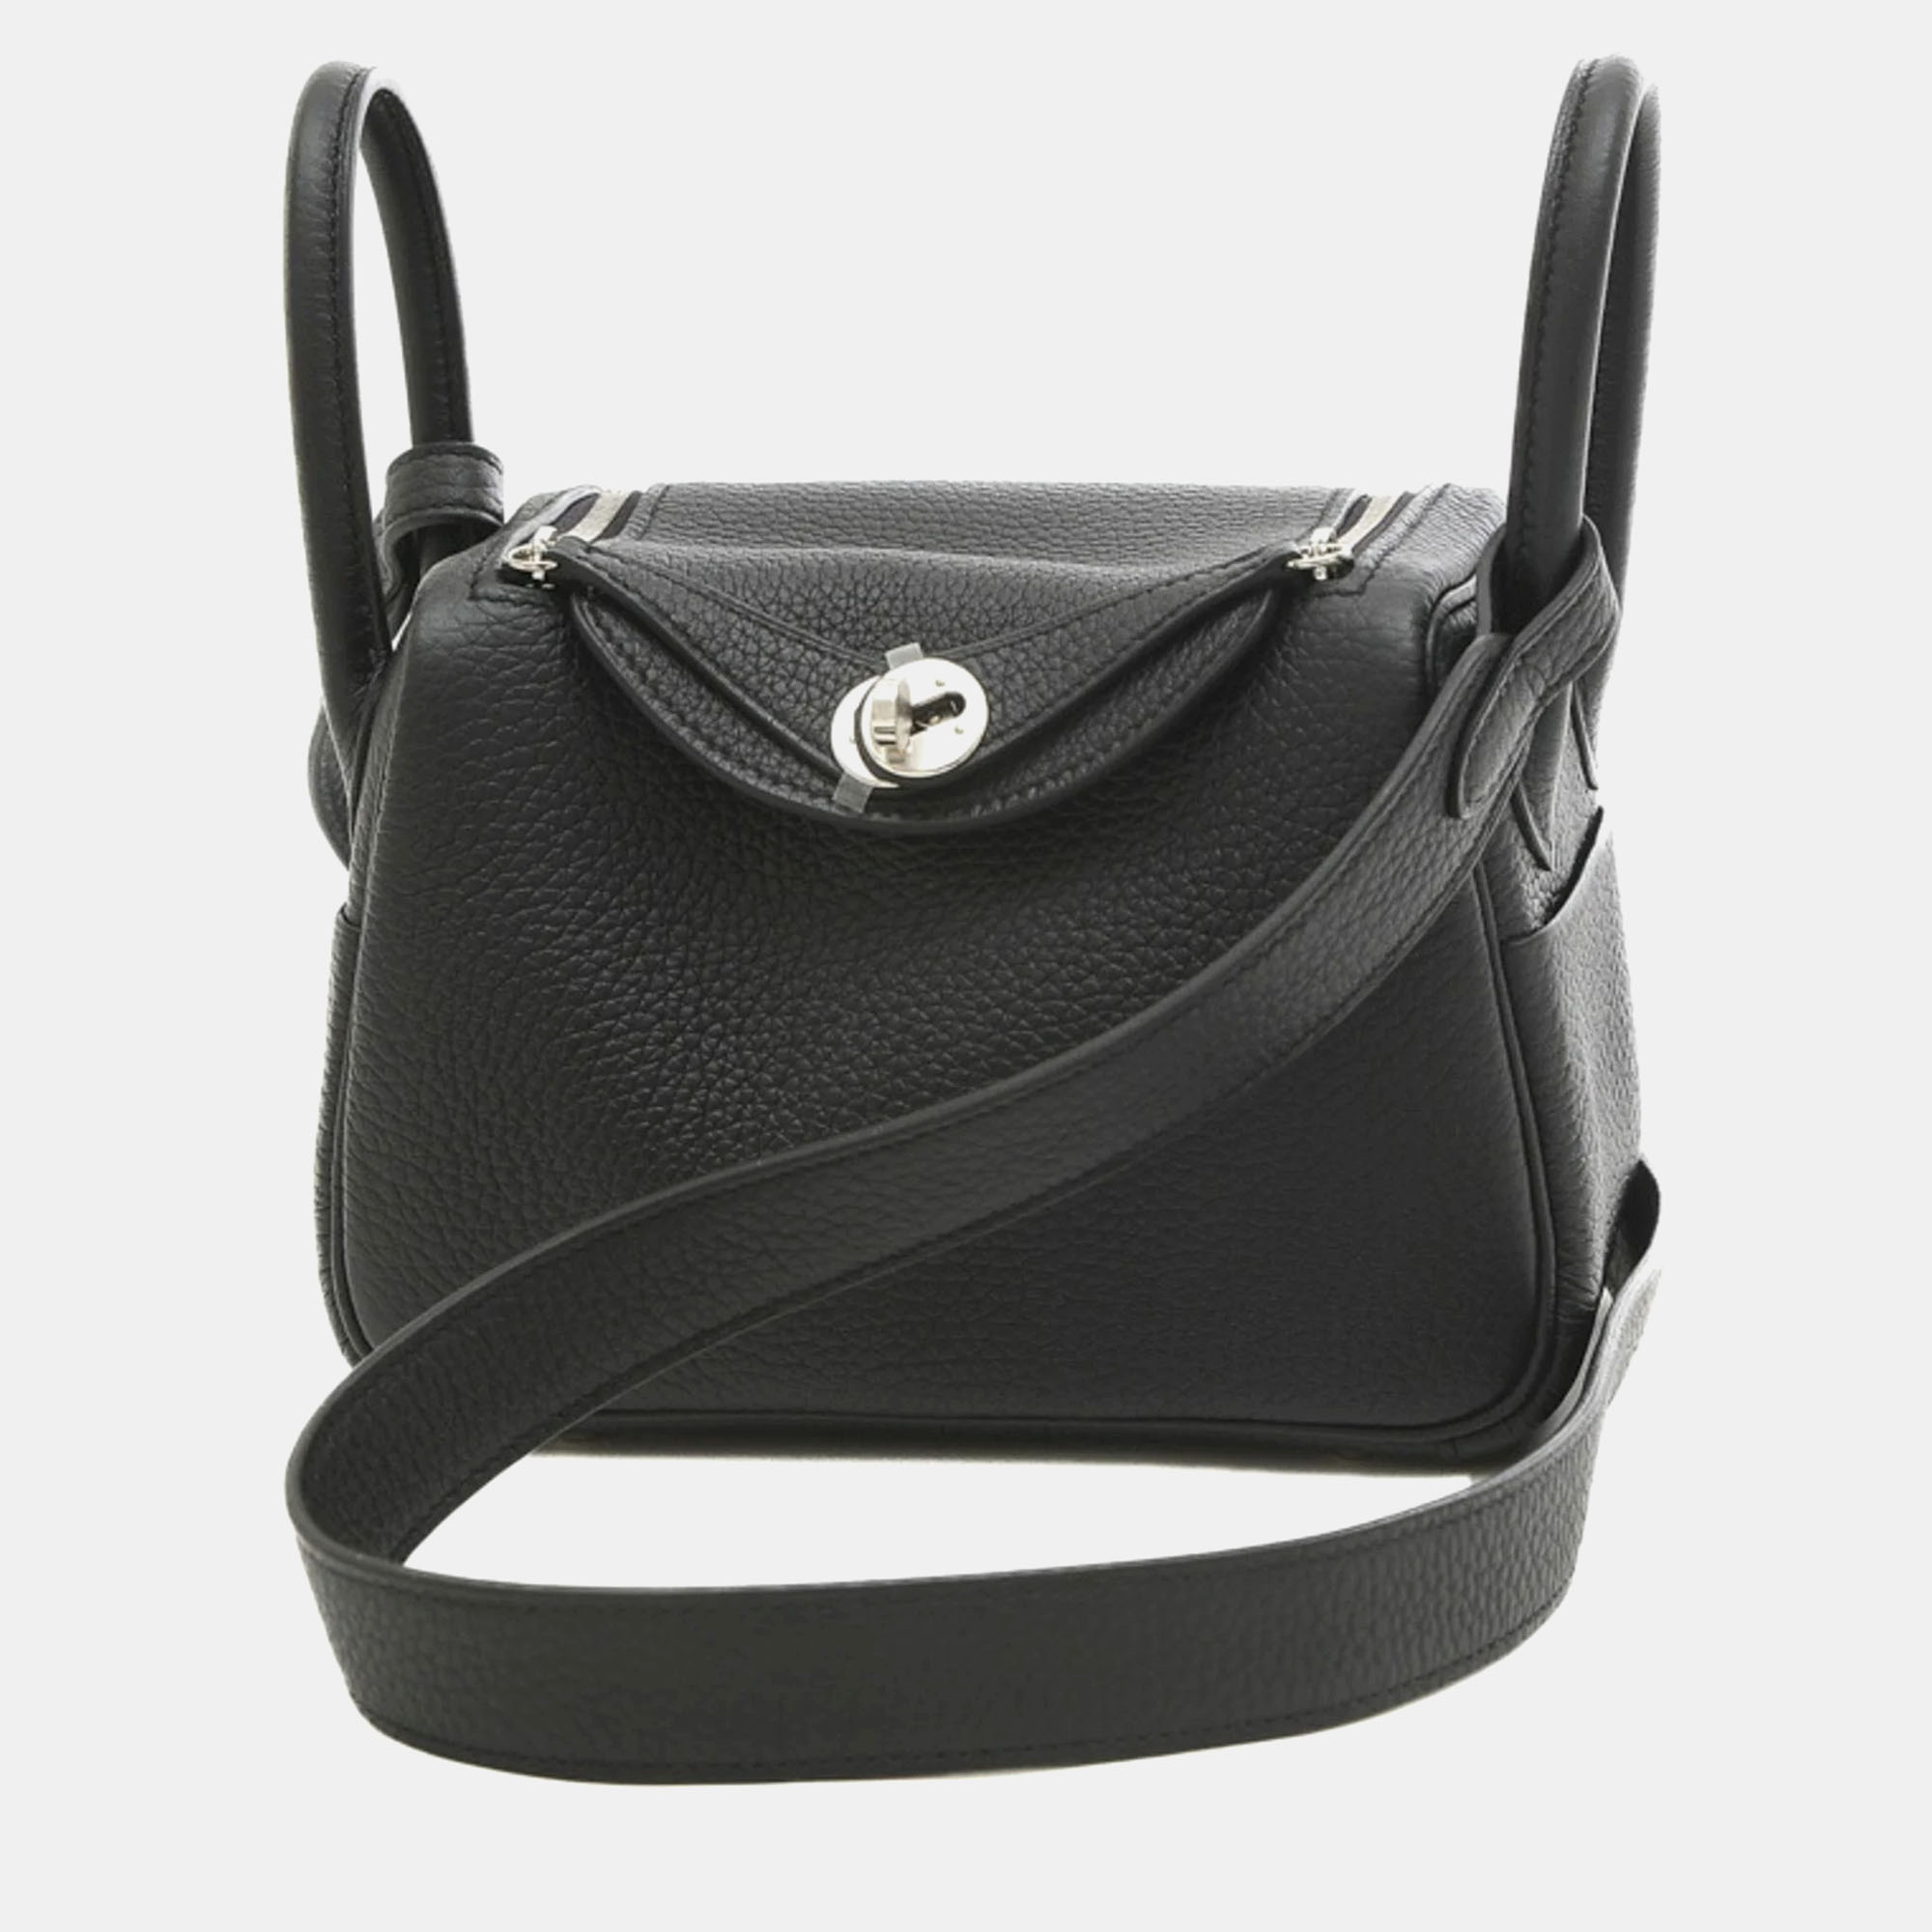 Hermes black taurillon clemence lindy handbag